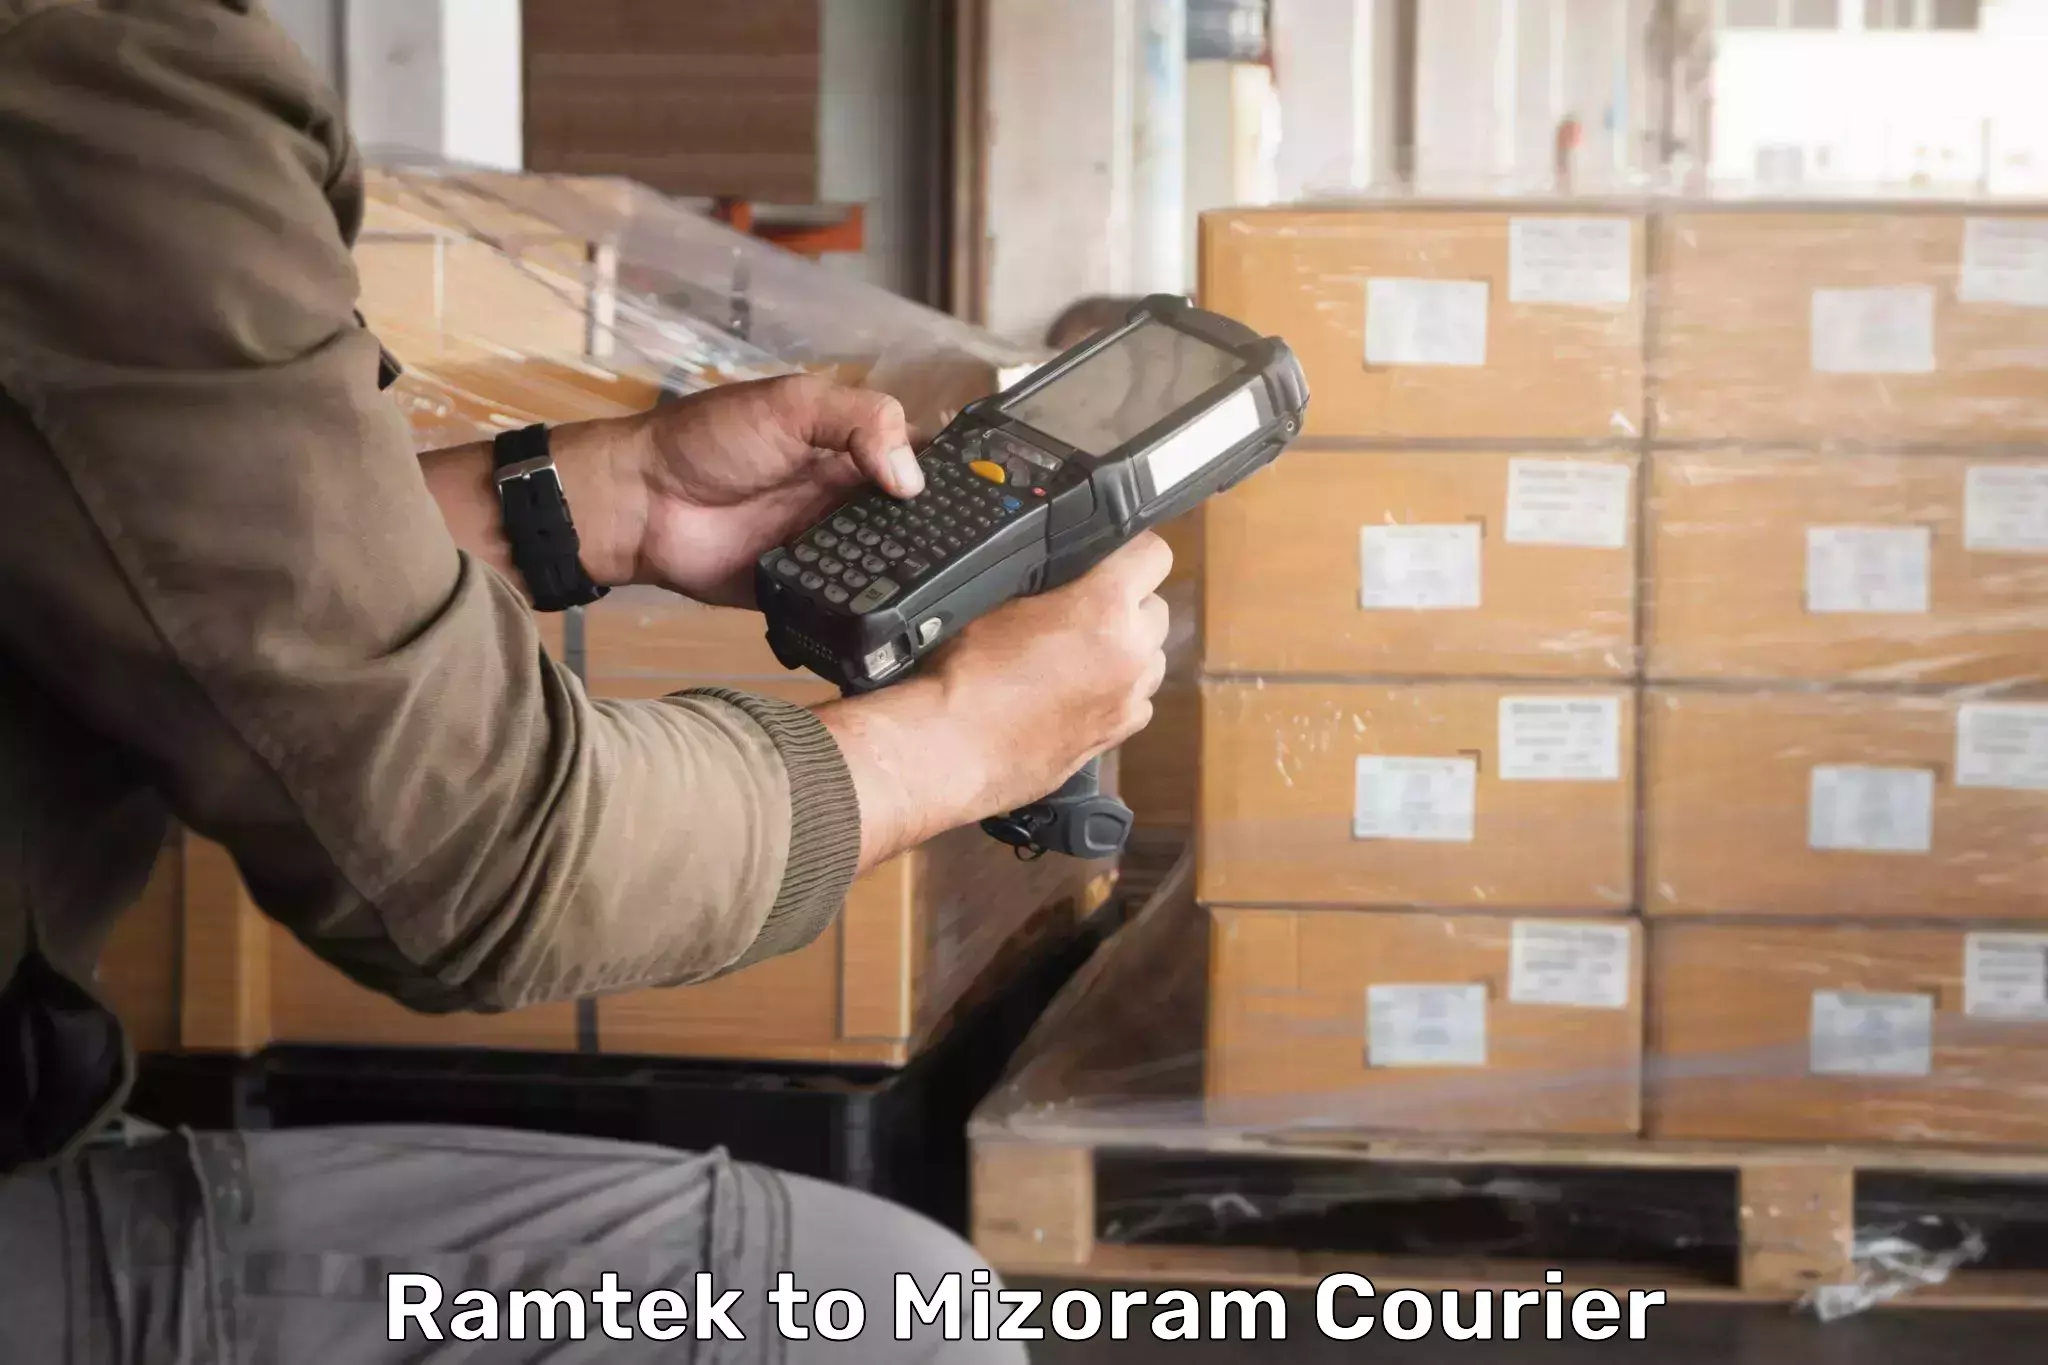 Urban courier service Ramtek to Aizawl